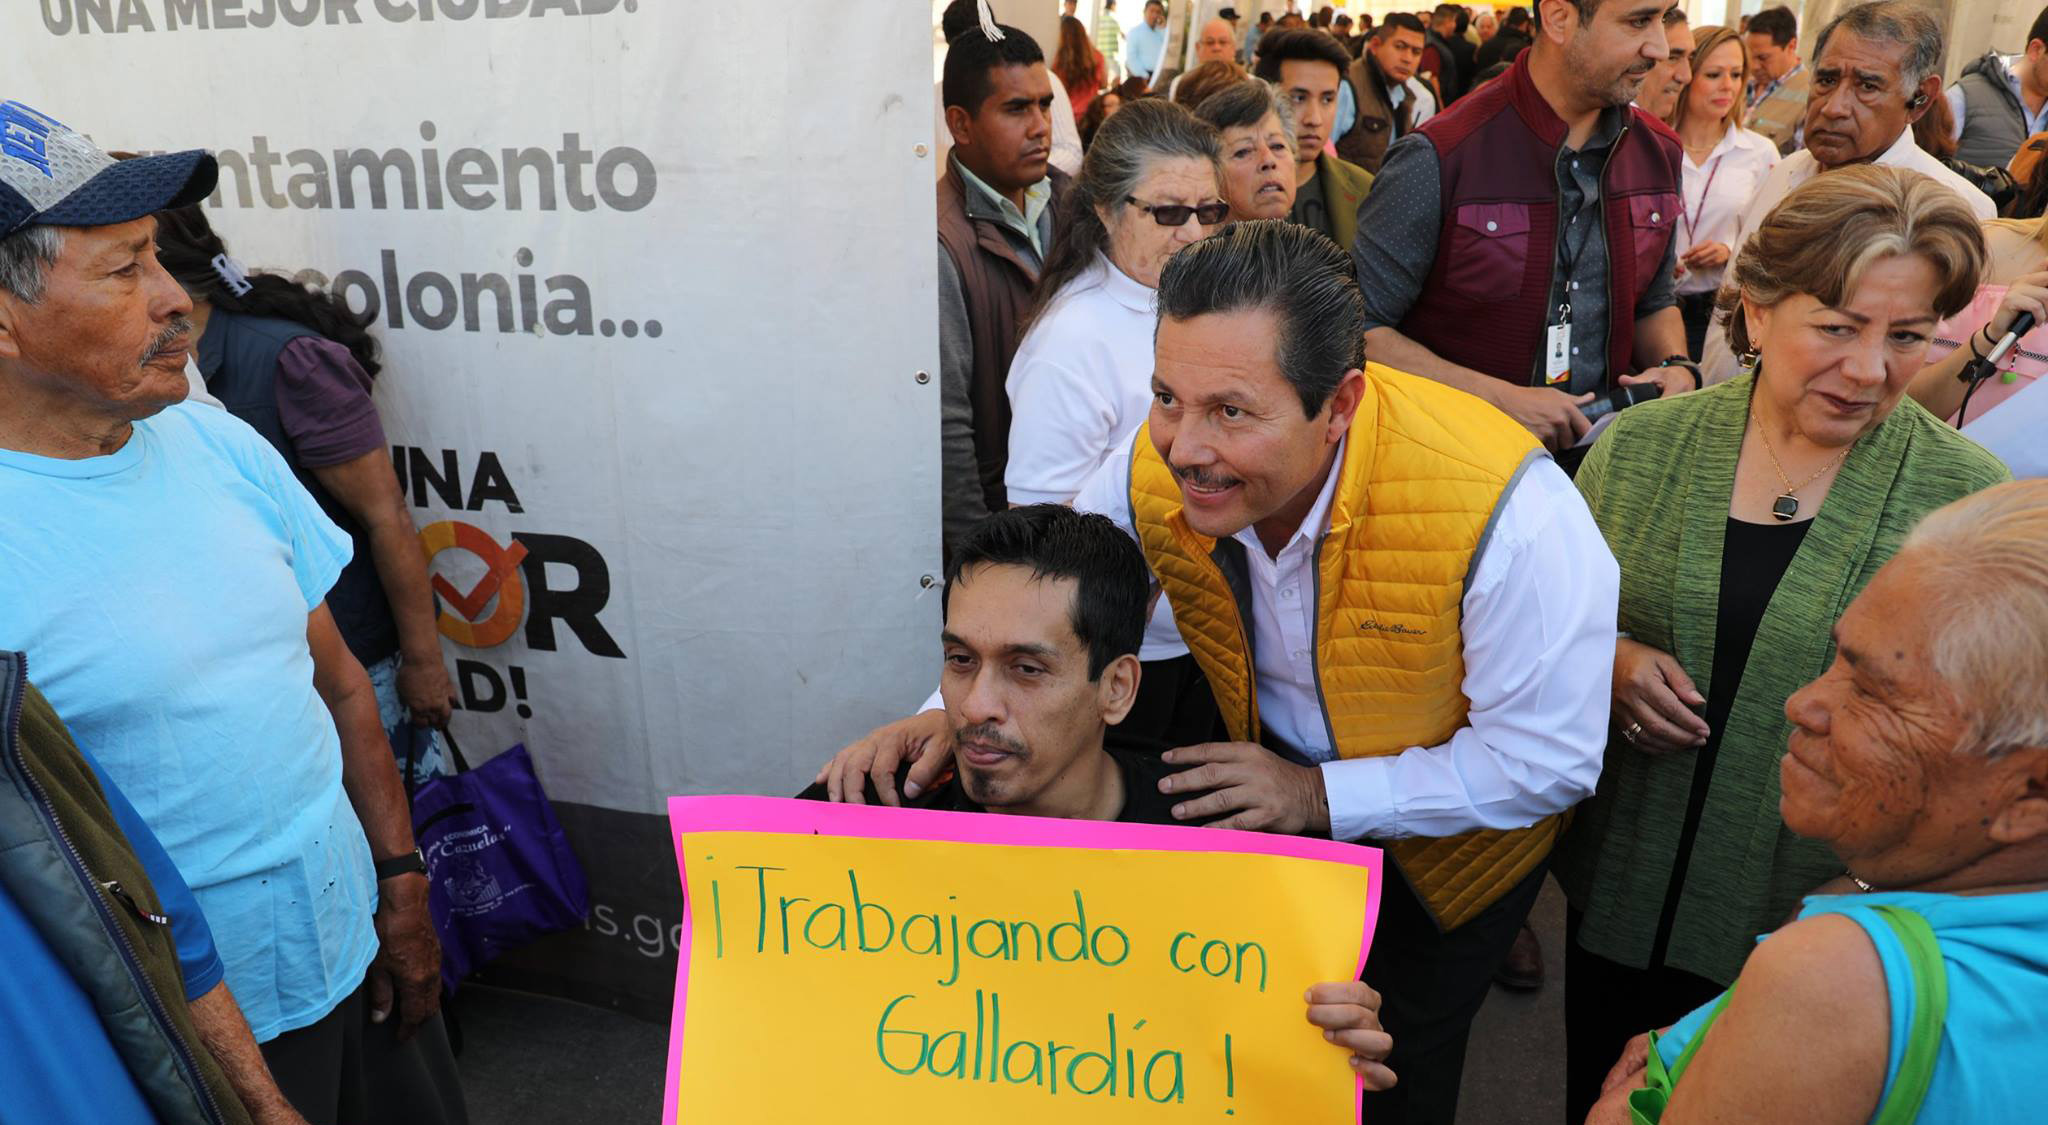  Ayuntamiento no respeta instituciones ni ley, por eso sostiene publicidad con Gallardía: PAN